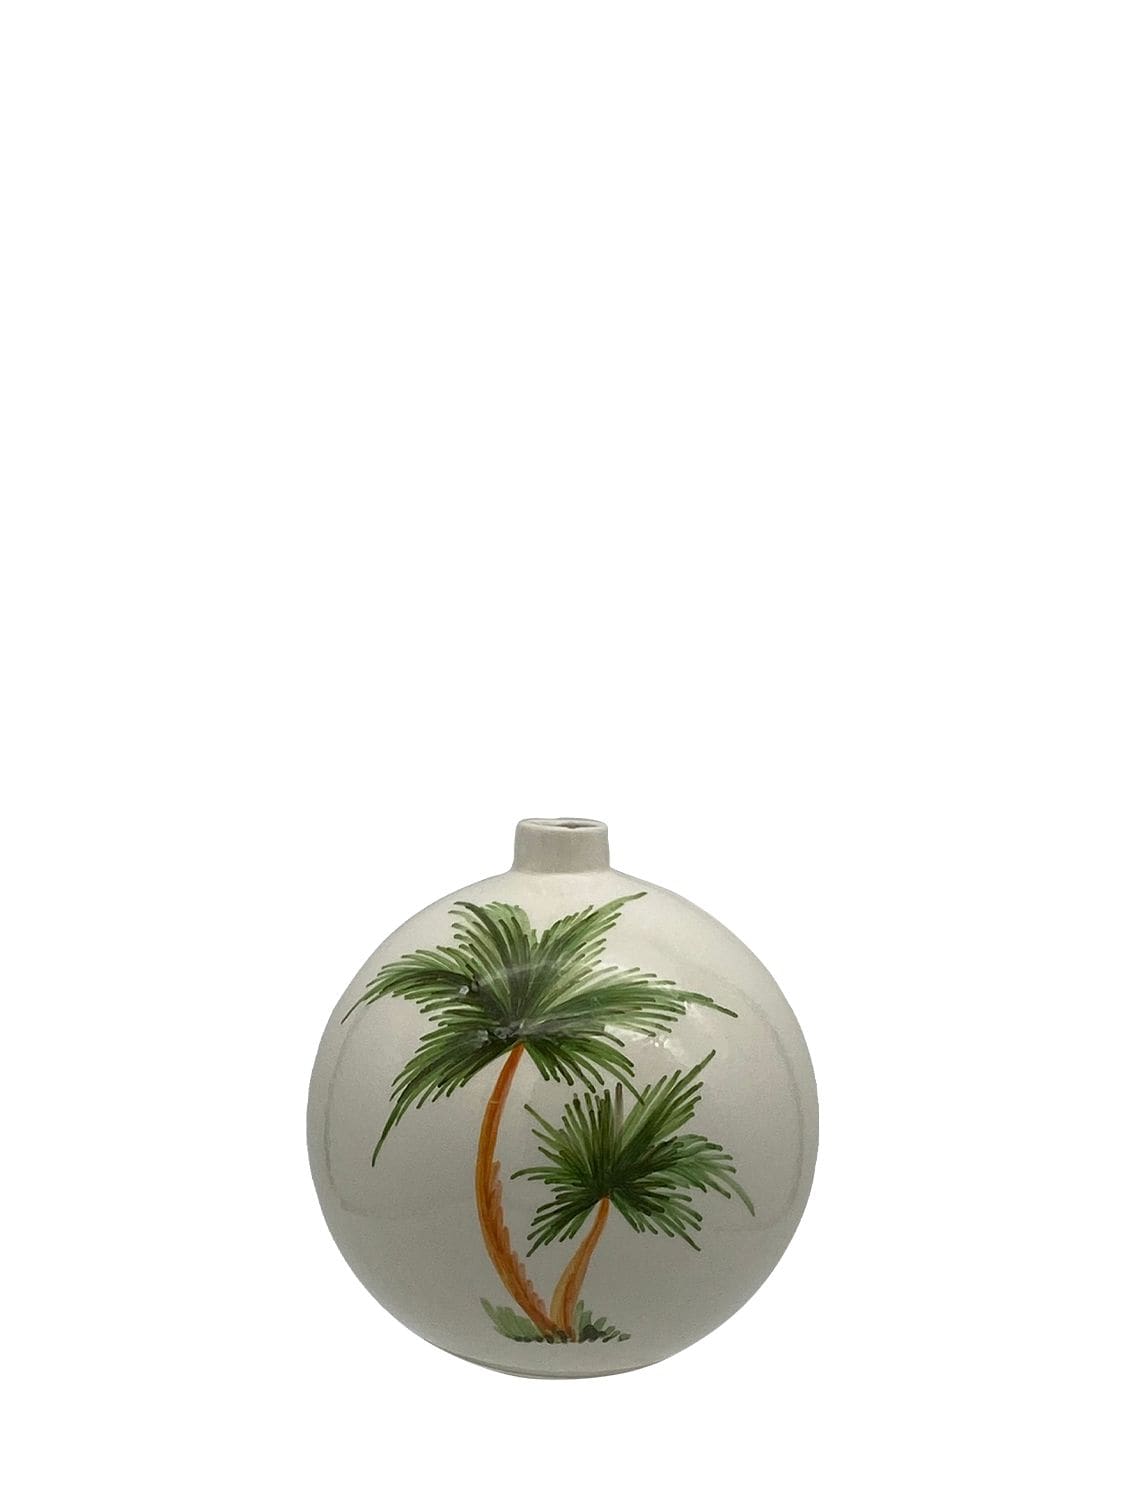 Image of Hand-painted Christmas Ball